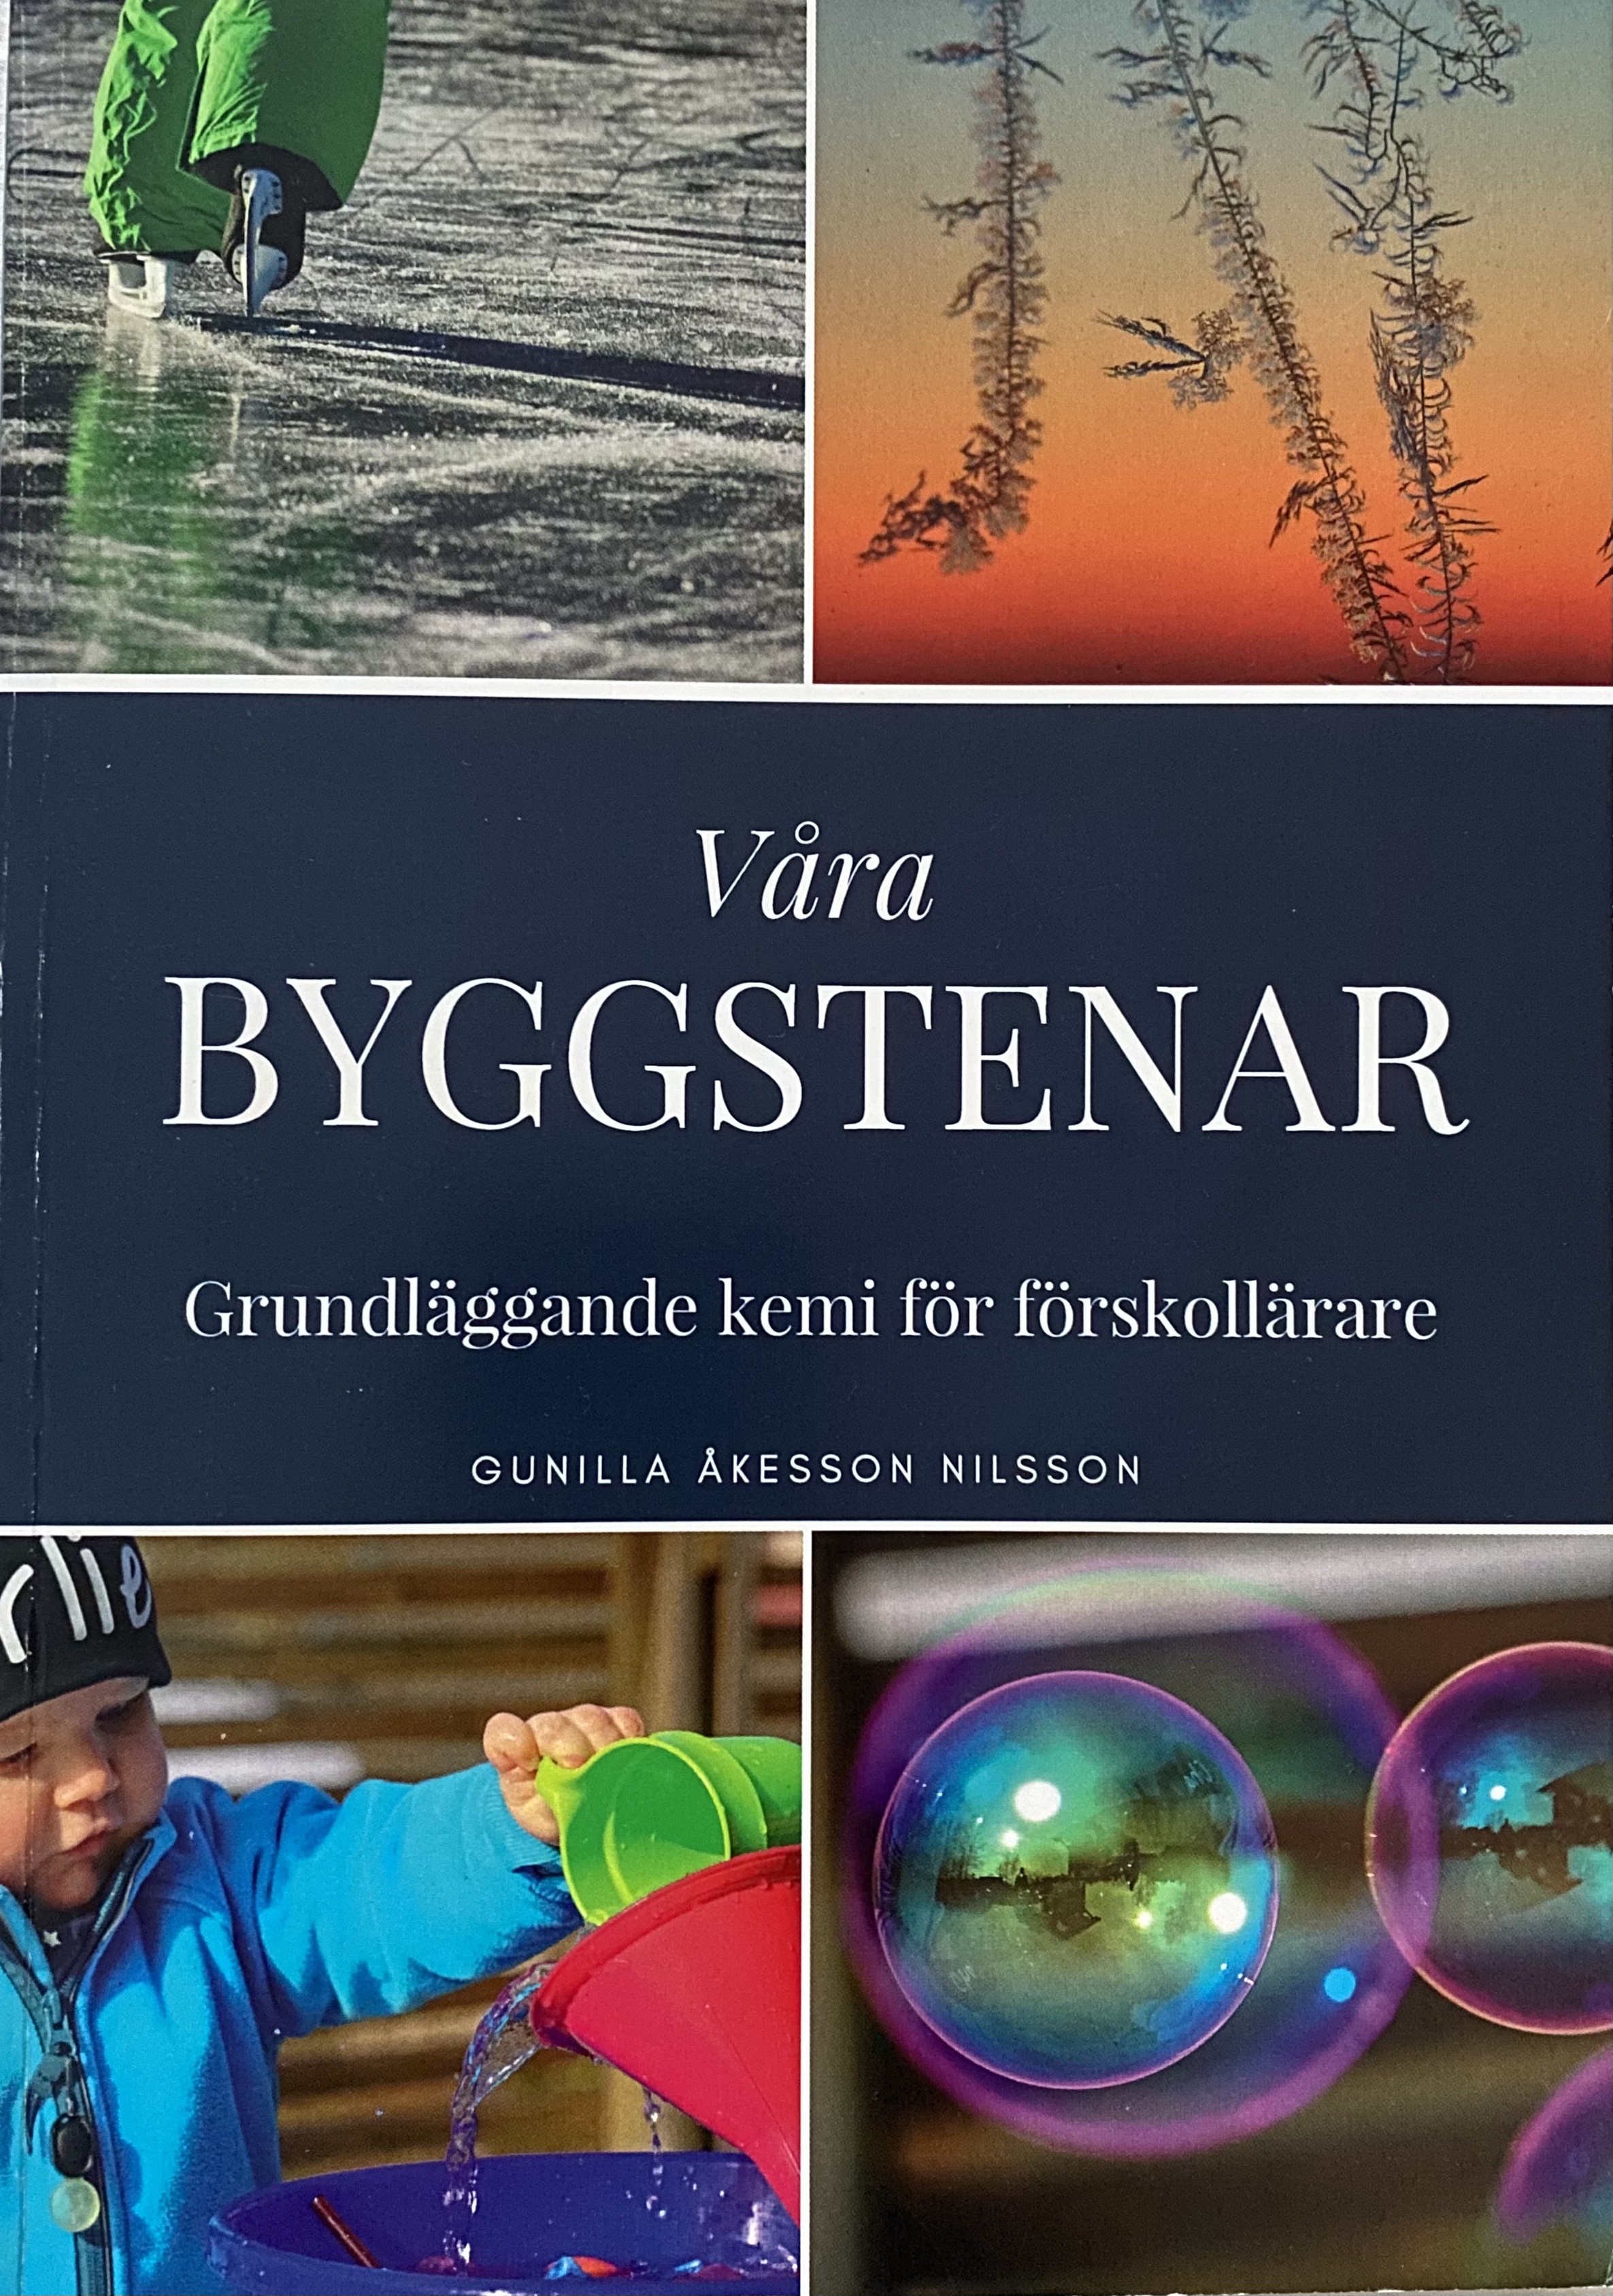 Våra byggstenar: grundläggande kemi för förskollärare; Gunilla Åkesson Nilsson; 2018